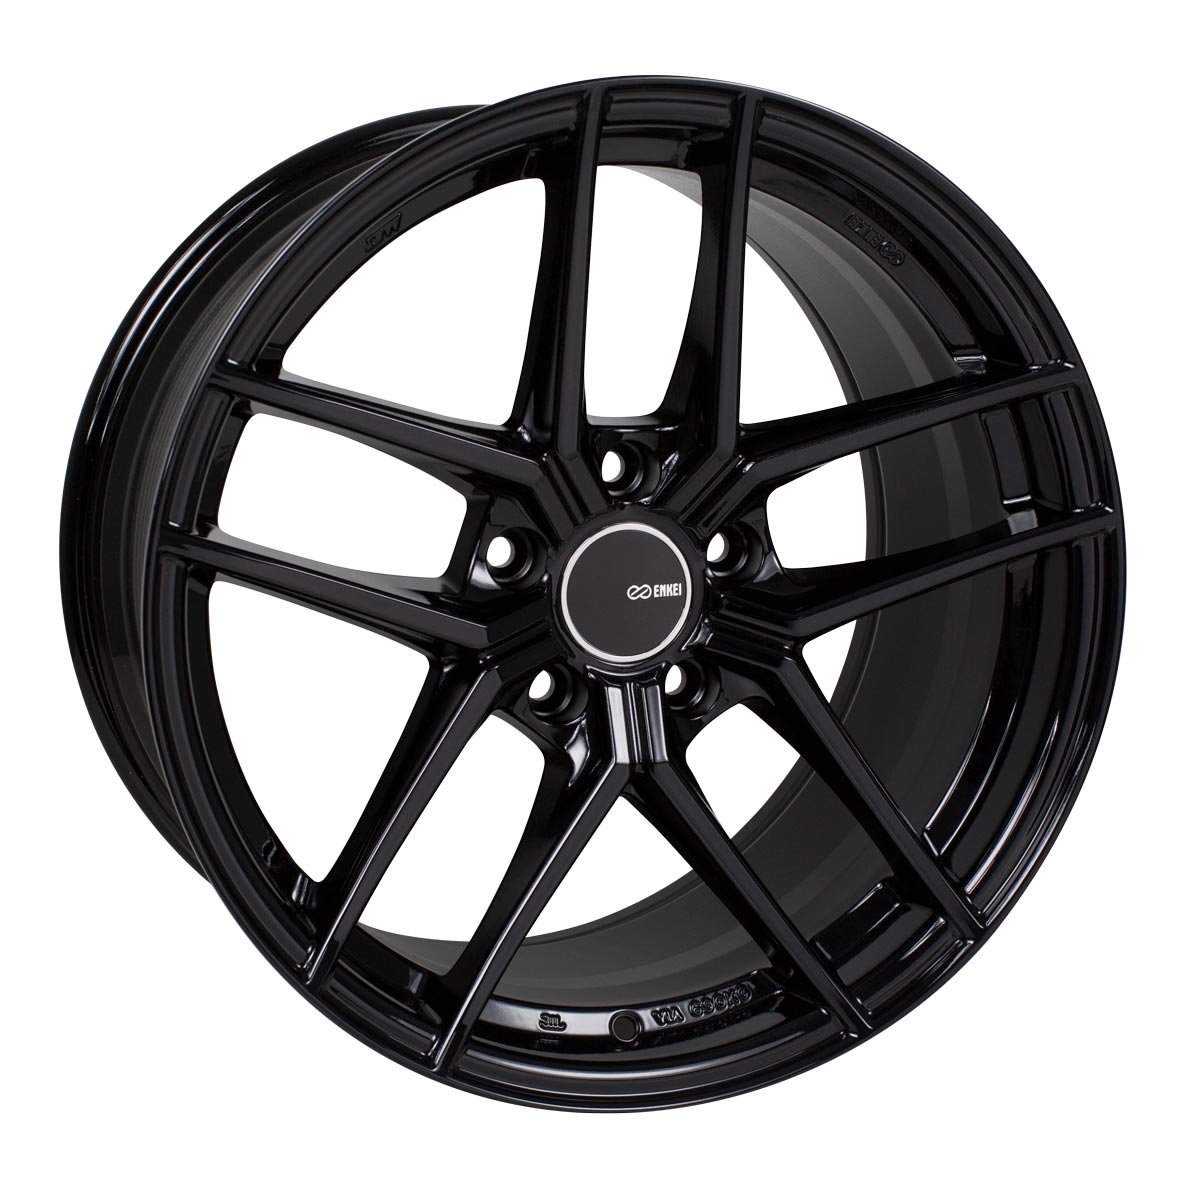 Enkei TY-5 Wheel Gloss Black 19x9.5 +15 5x114.3 498-995-6515BK